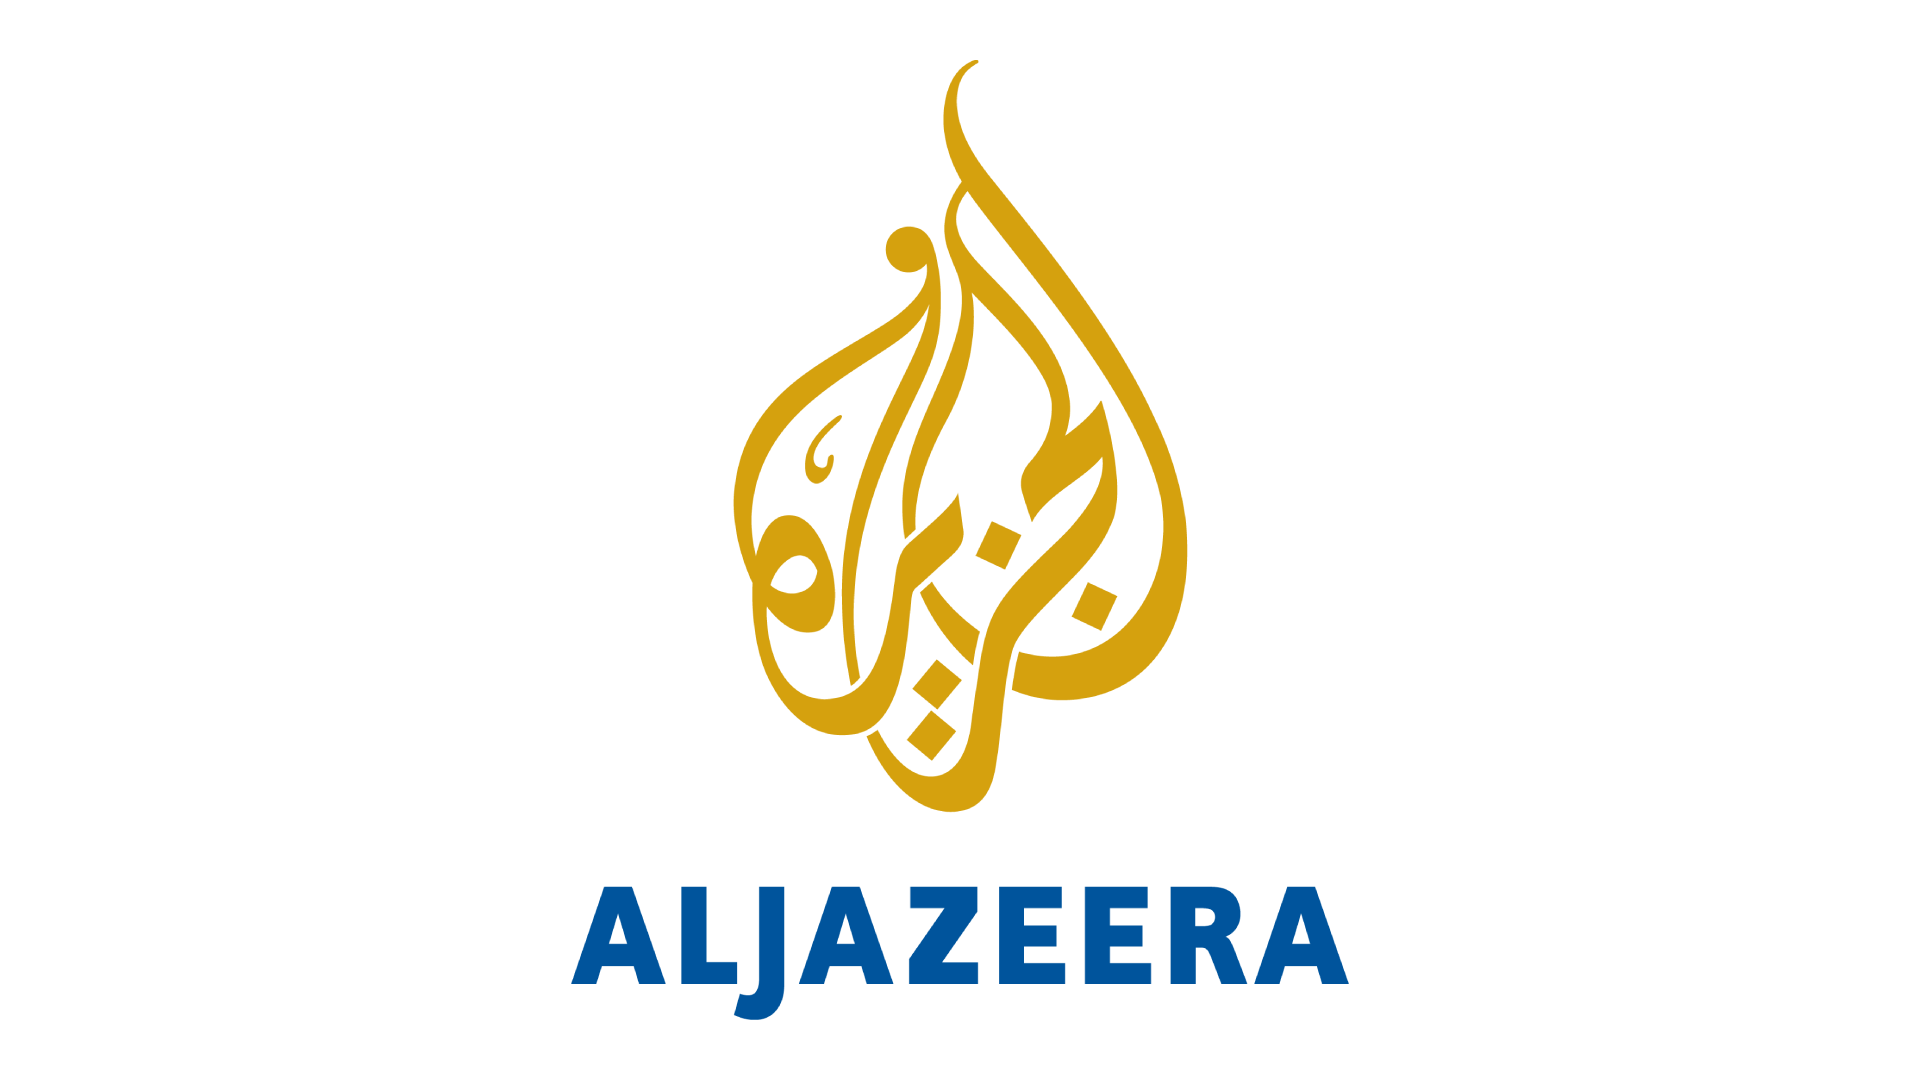 Al Jazeera Live TV, Online